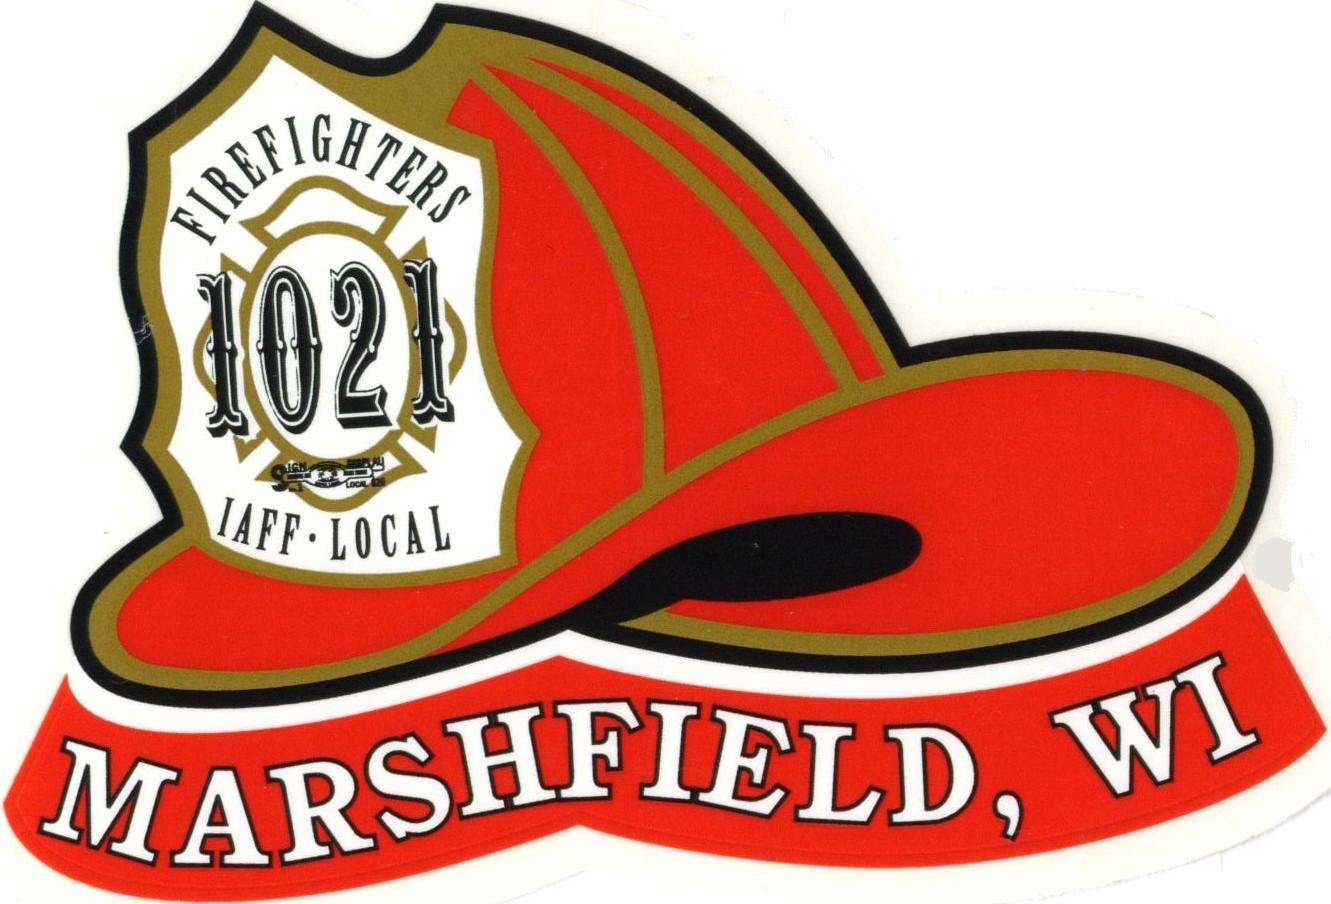 Fire Fighters 1021 Marshfield